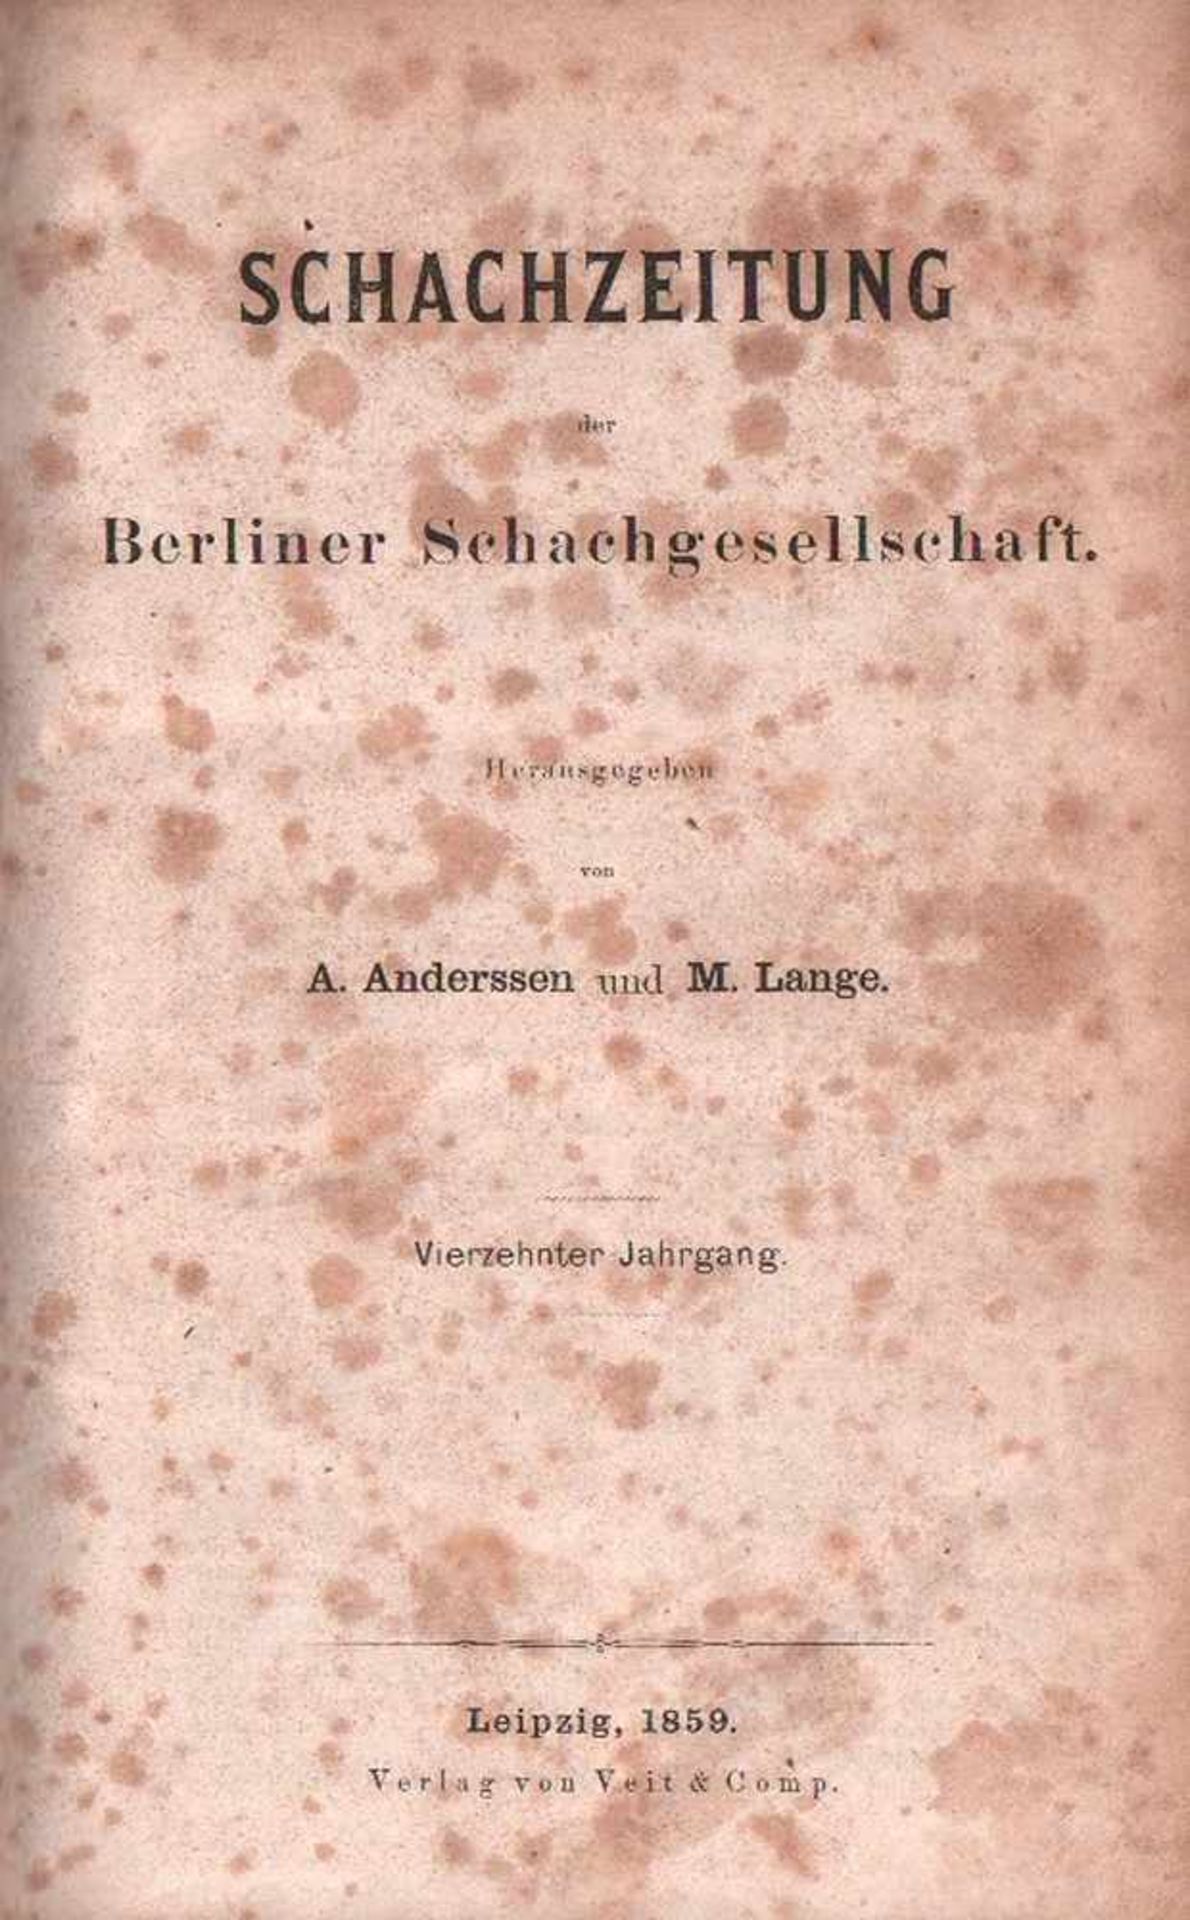 (Deutsche) Schachzeitung der Berliner Schachgesellschaft.Hrsg. von A. Anderssen und M. Lange. 14.